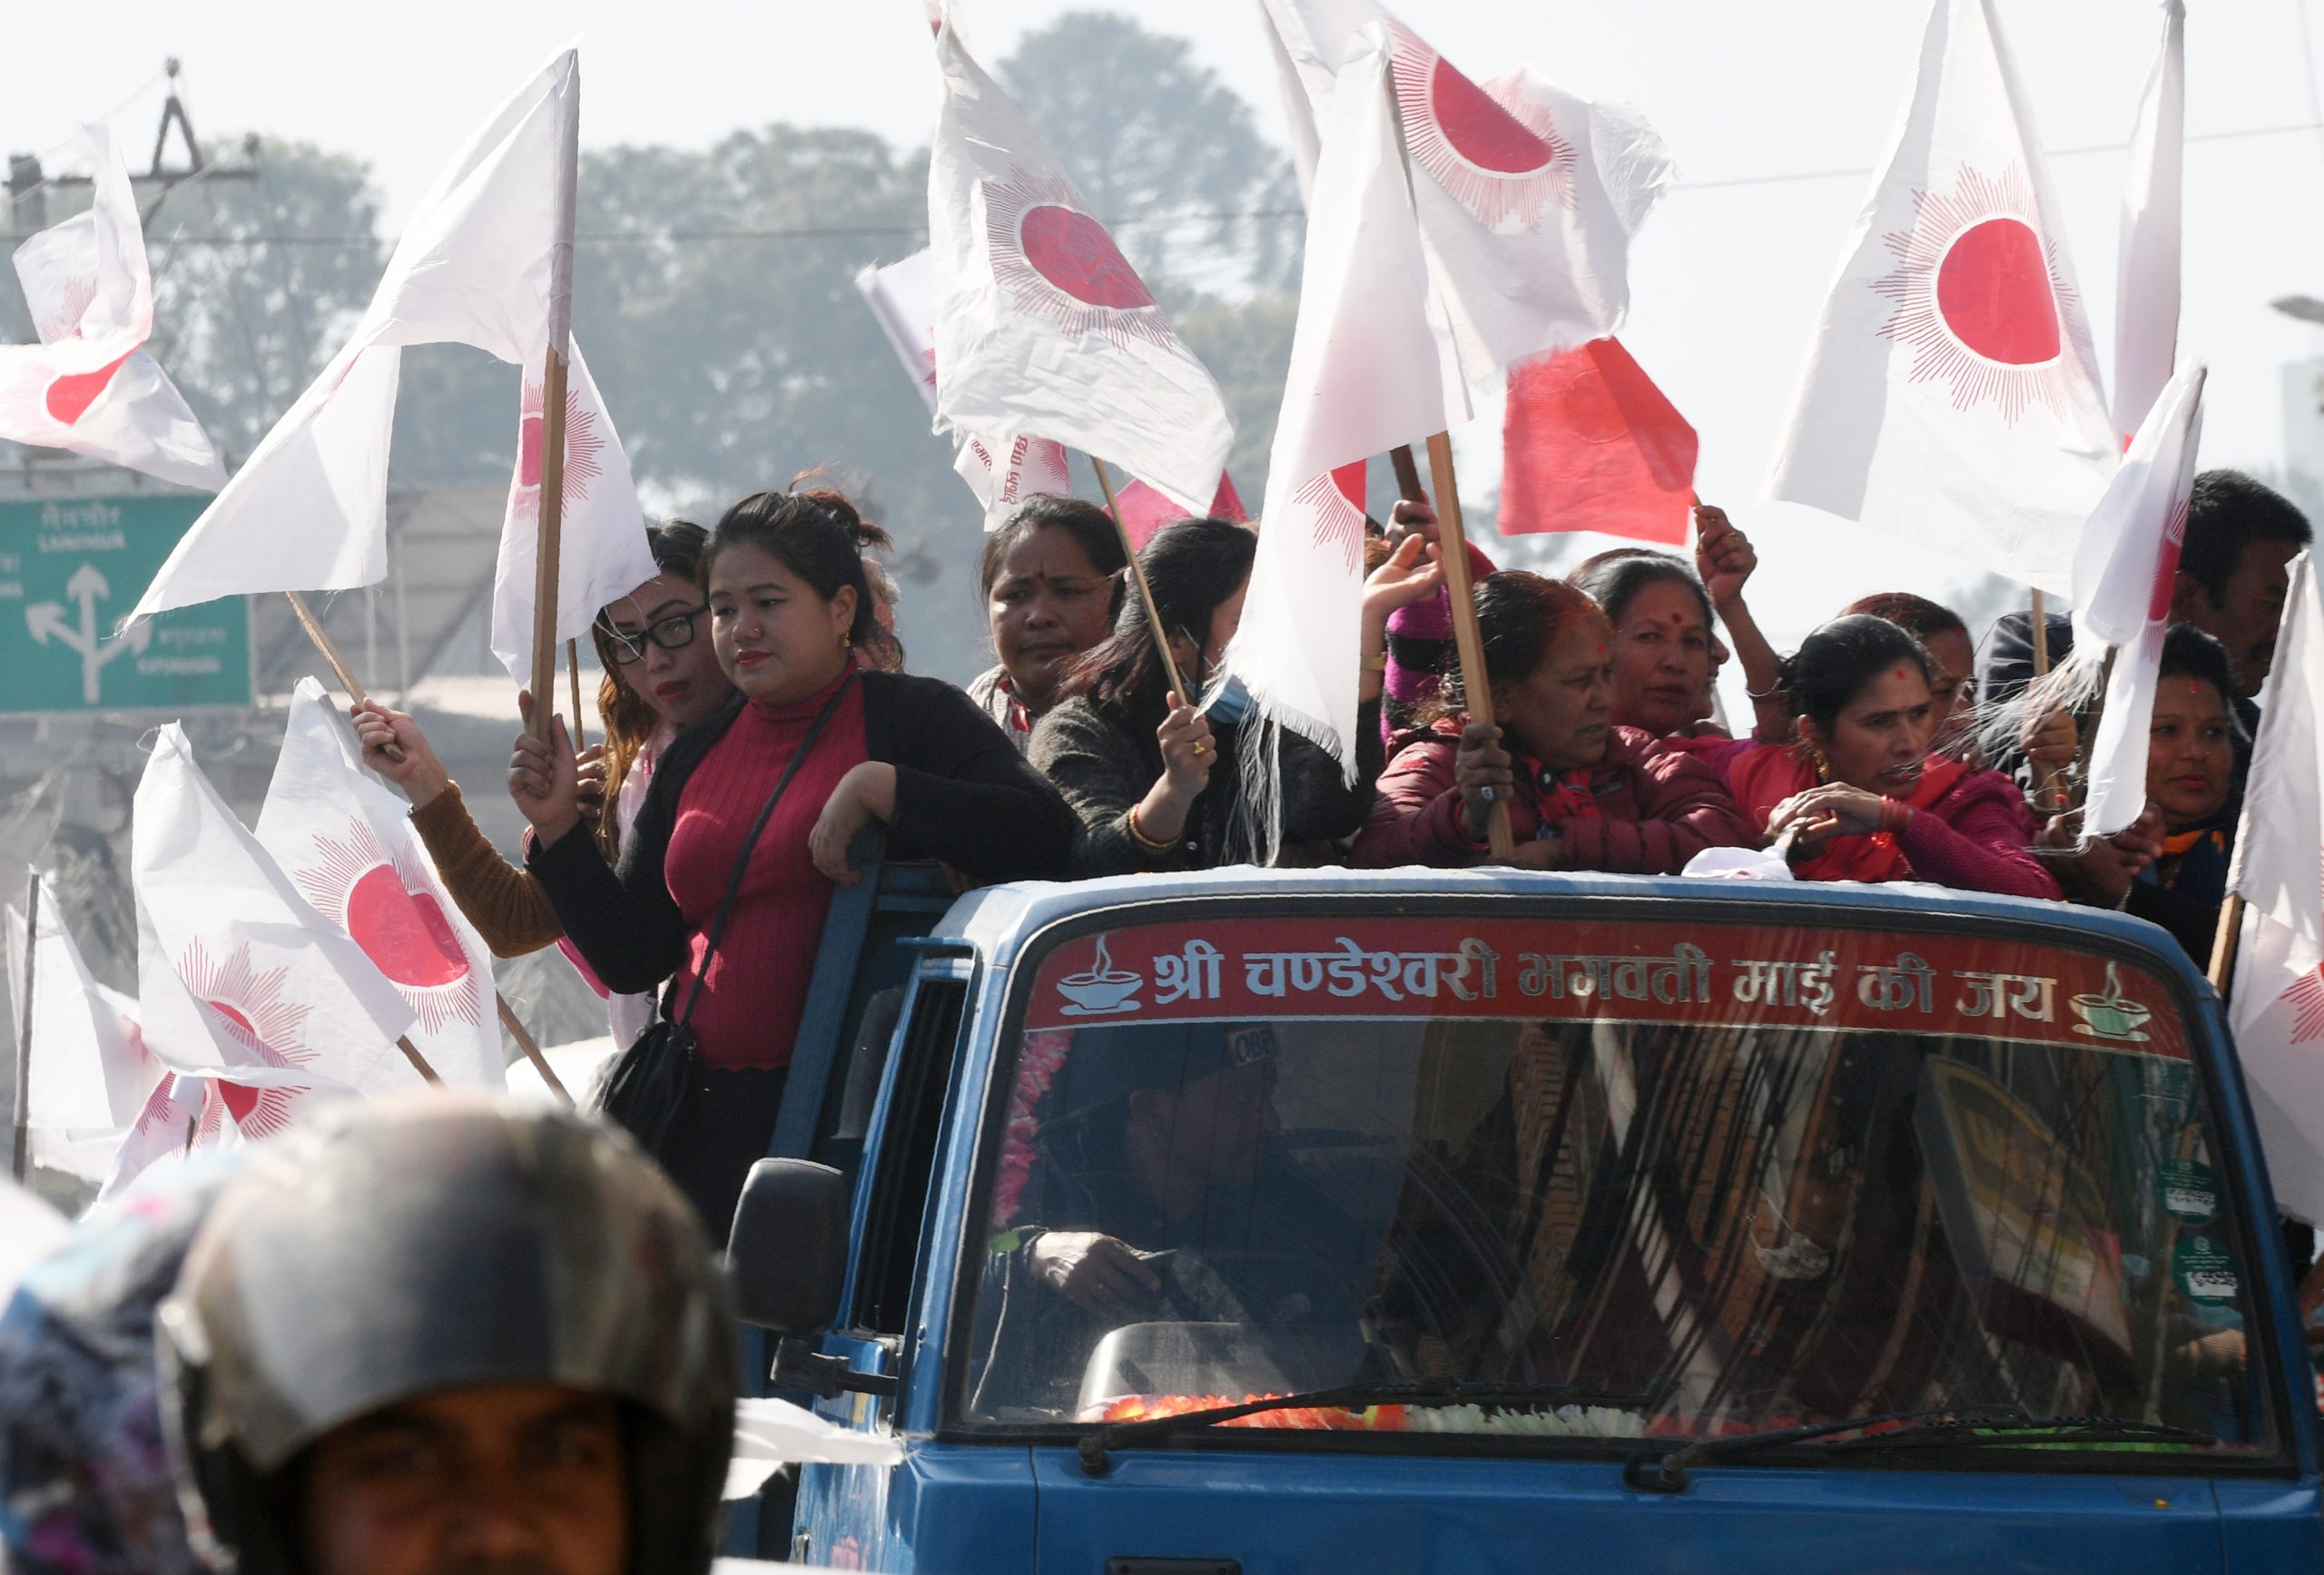 Kemenangan gemilang Aam Aadmi di Delhi bisa menjadi pelajaran bagi kekuatan politik alternatif Nepal